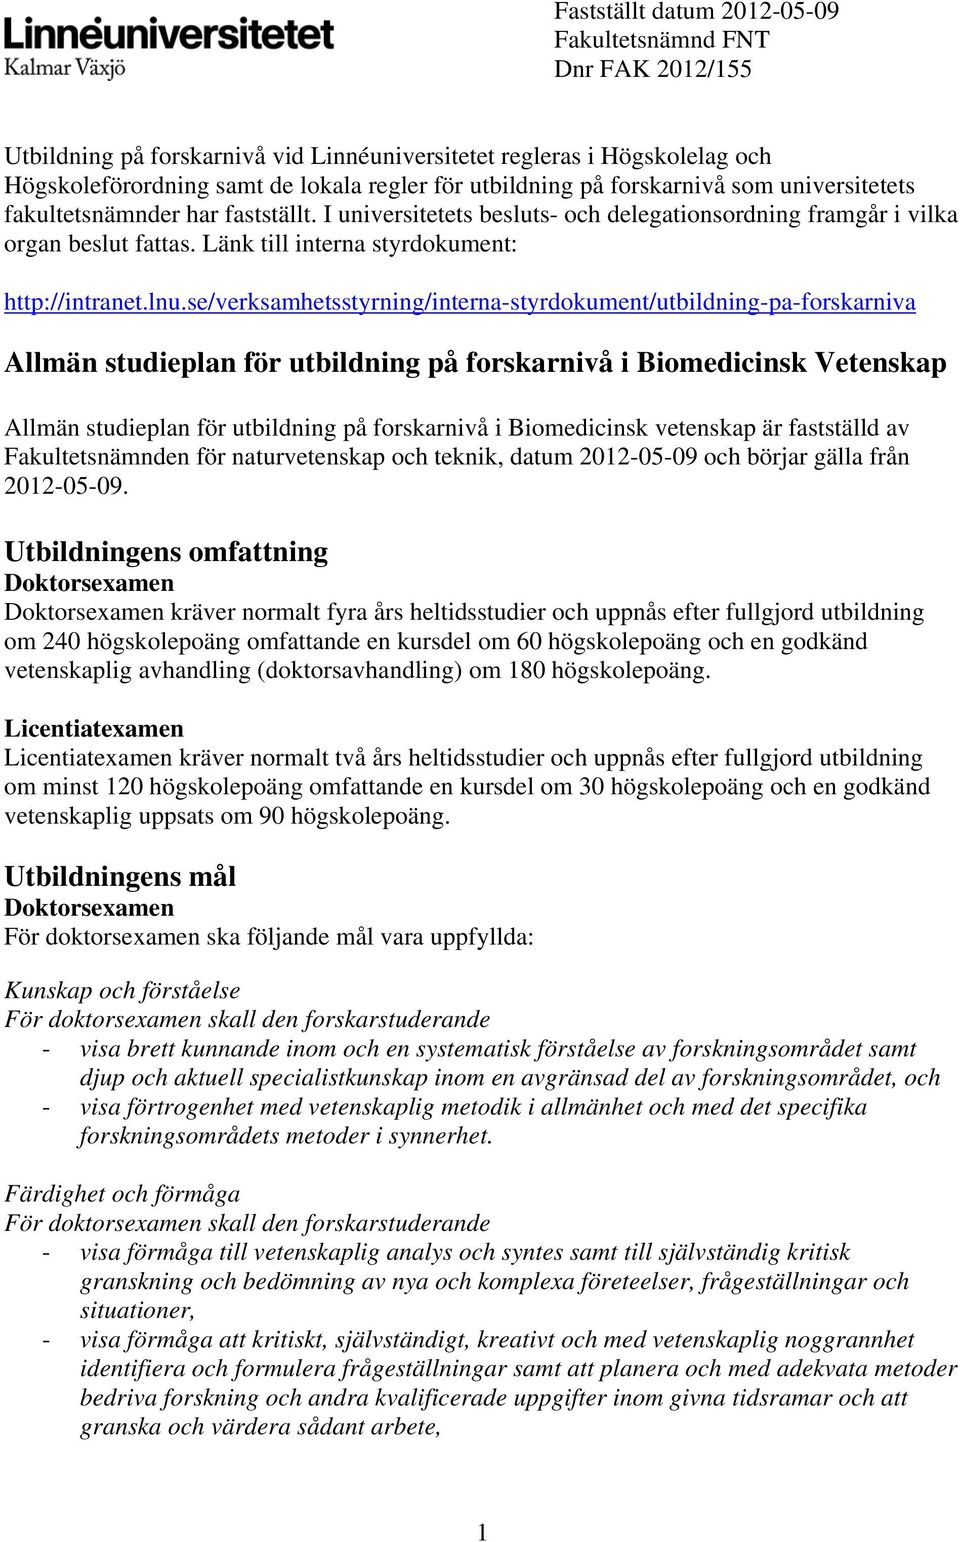 lnu.se/verksamhetsstyrning/interna-styrdokument/utbildning-pa-forskarniva Allmän studieplan för utbildning på forskarnivå i Biomedicinsk Vetenskap Allmän studieplan för utbildning på forskarnivå i